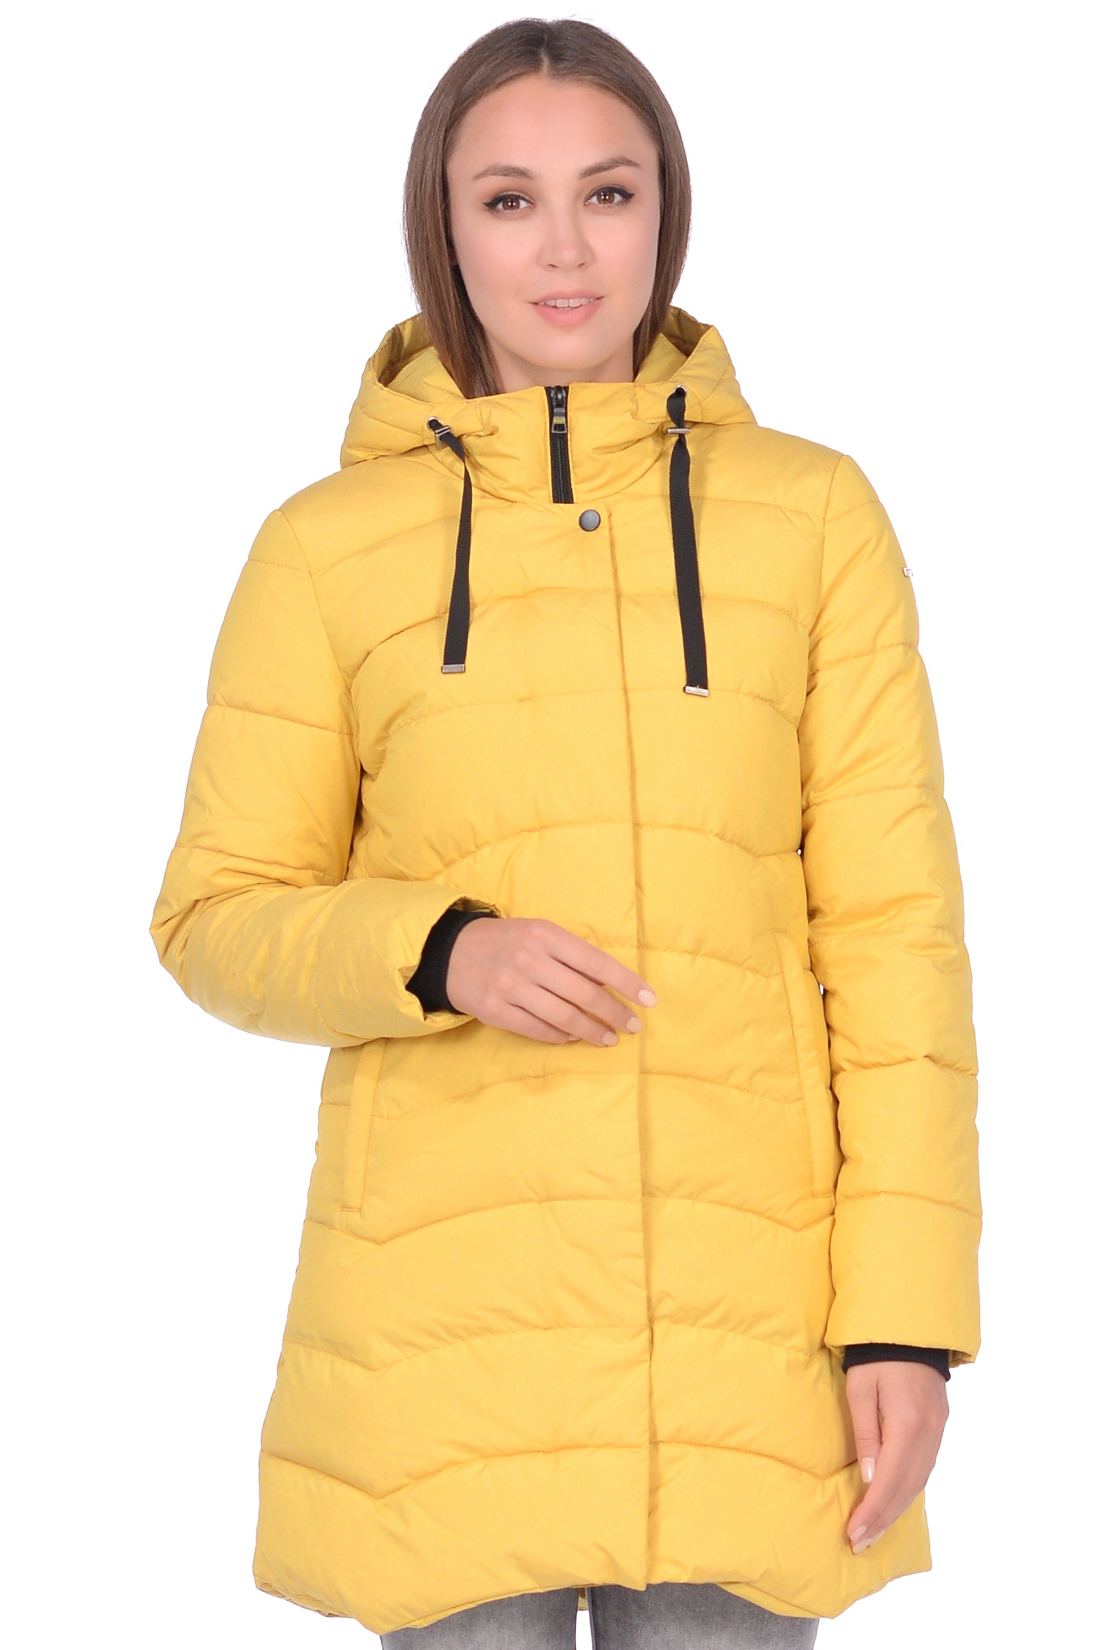 Куртка с фигурной прострочкой (арт. baon B038588), размер M, цвет желтый Куртка с фигурной прострочкой (арт. baon B038588) - фото 6